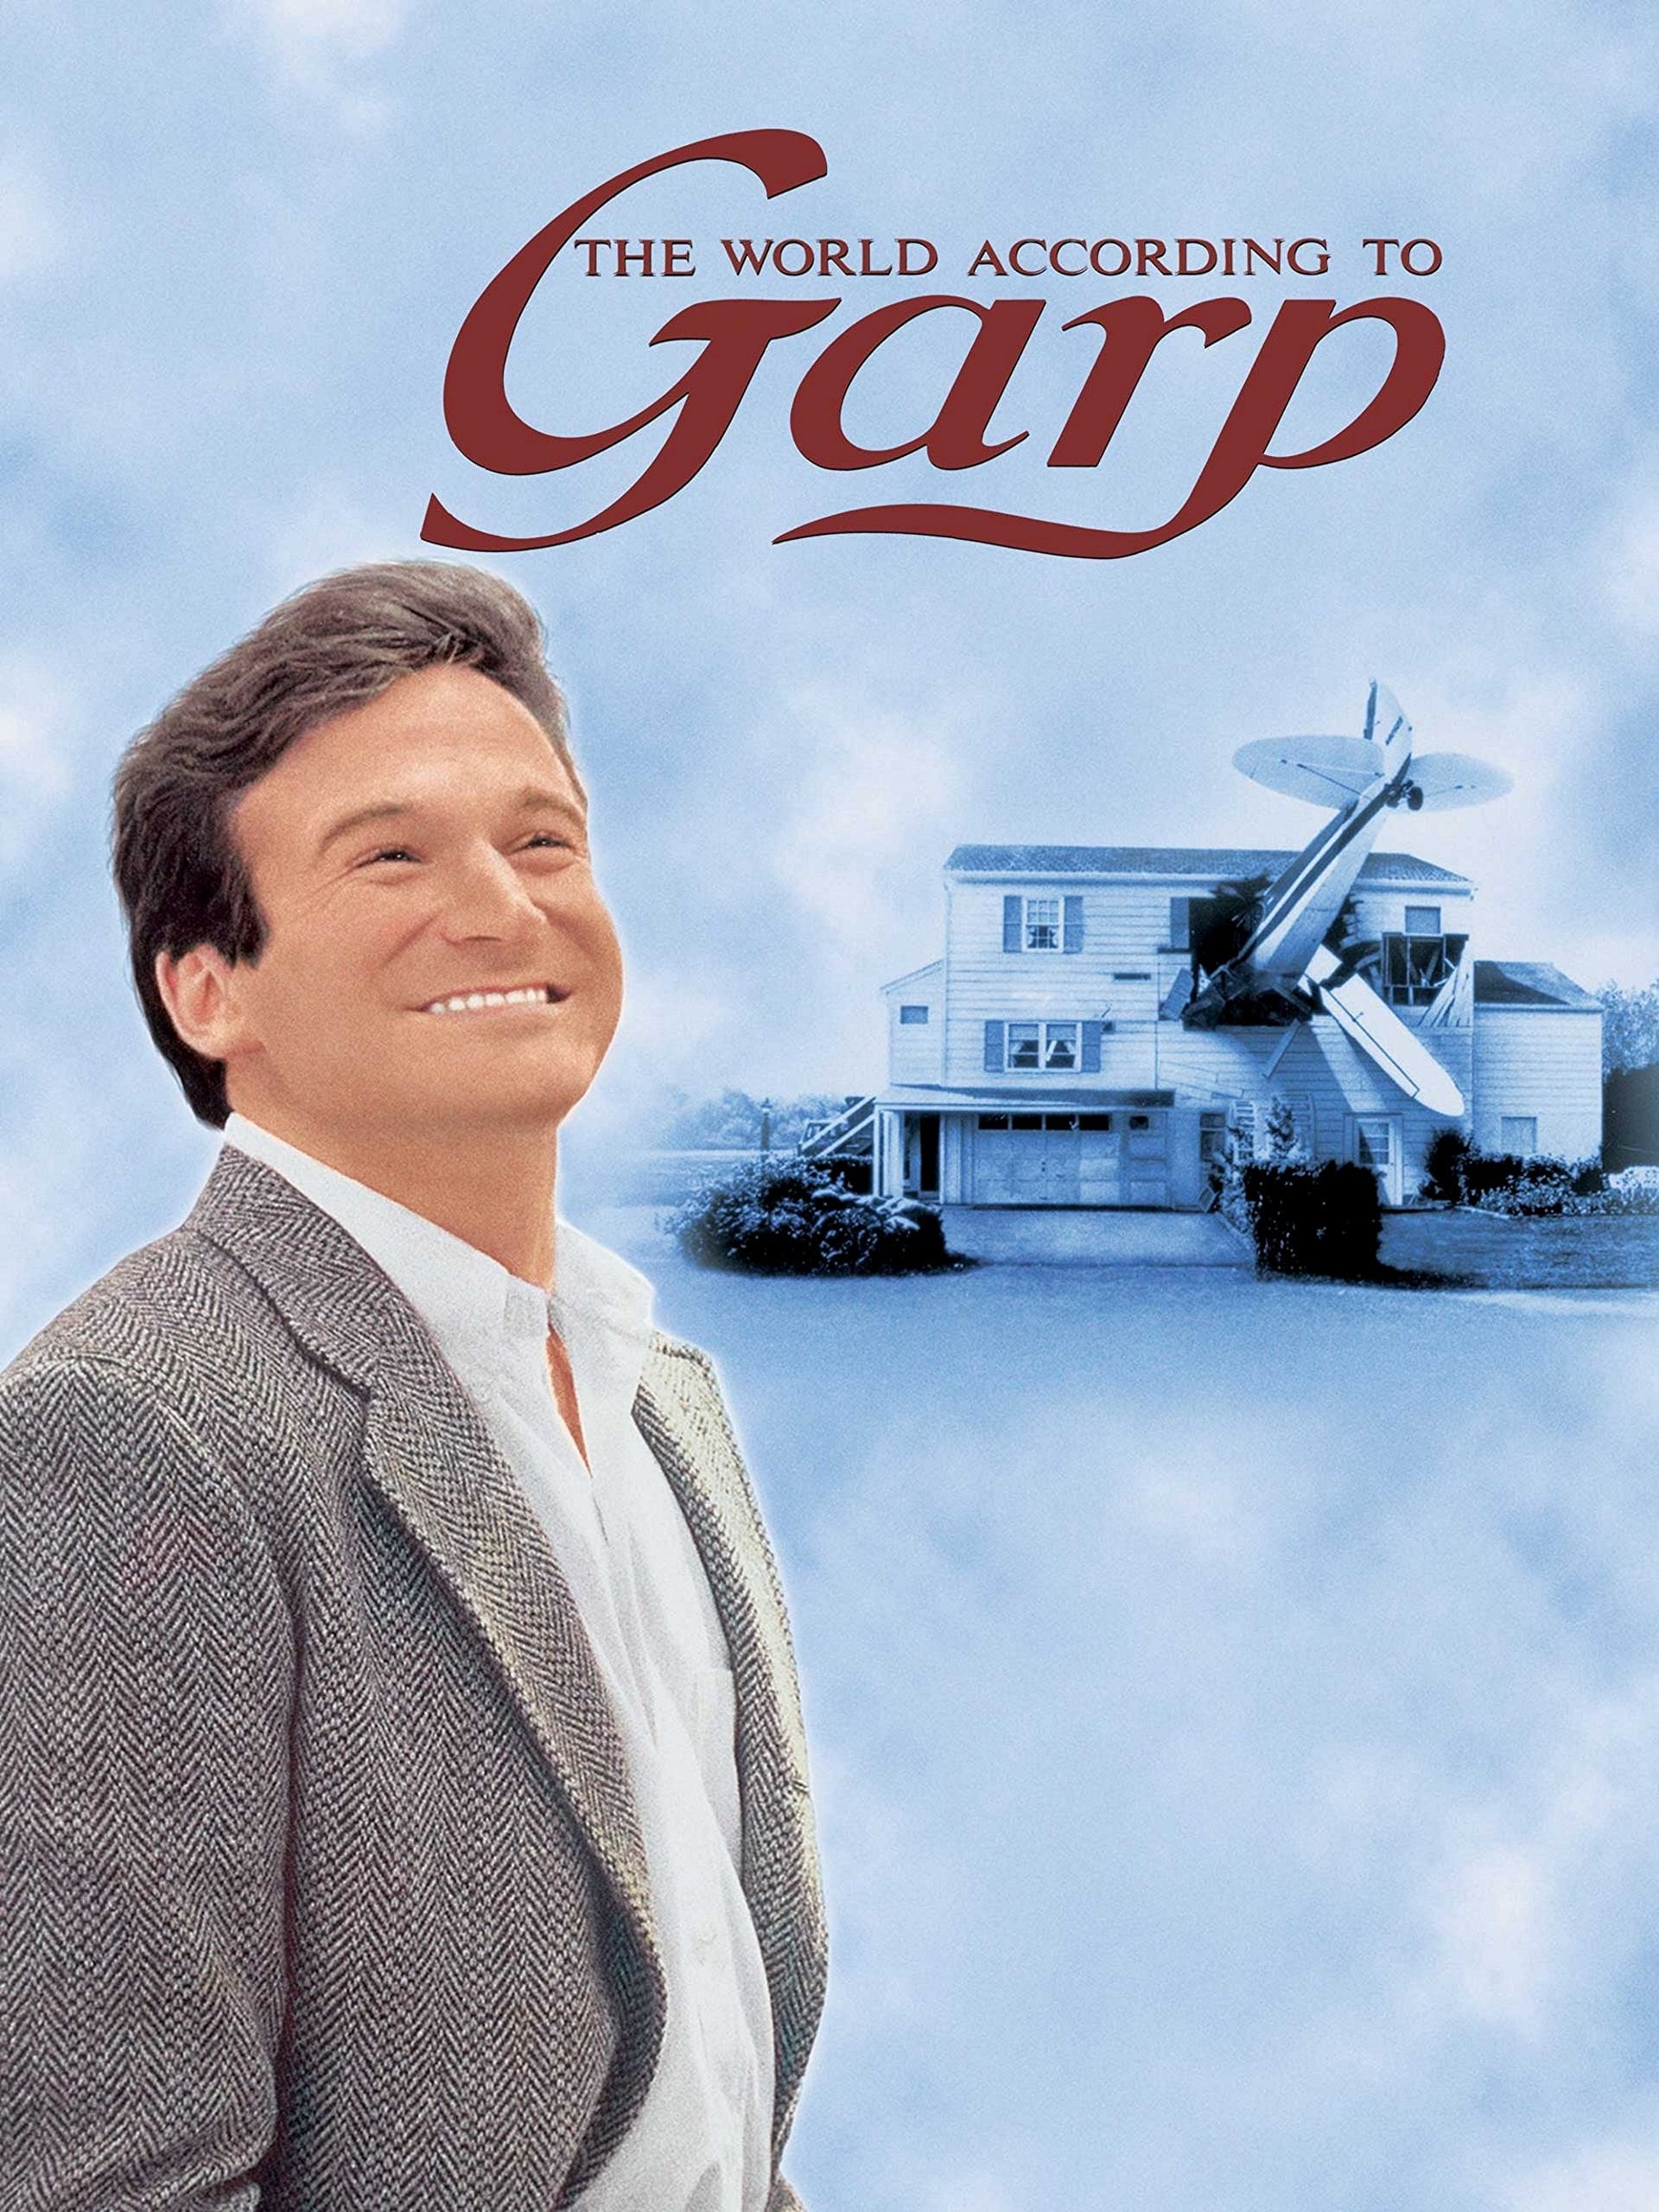 Plakat von "Garp und wie er die Welt sah"